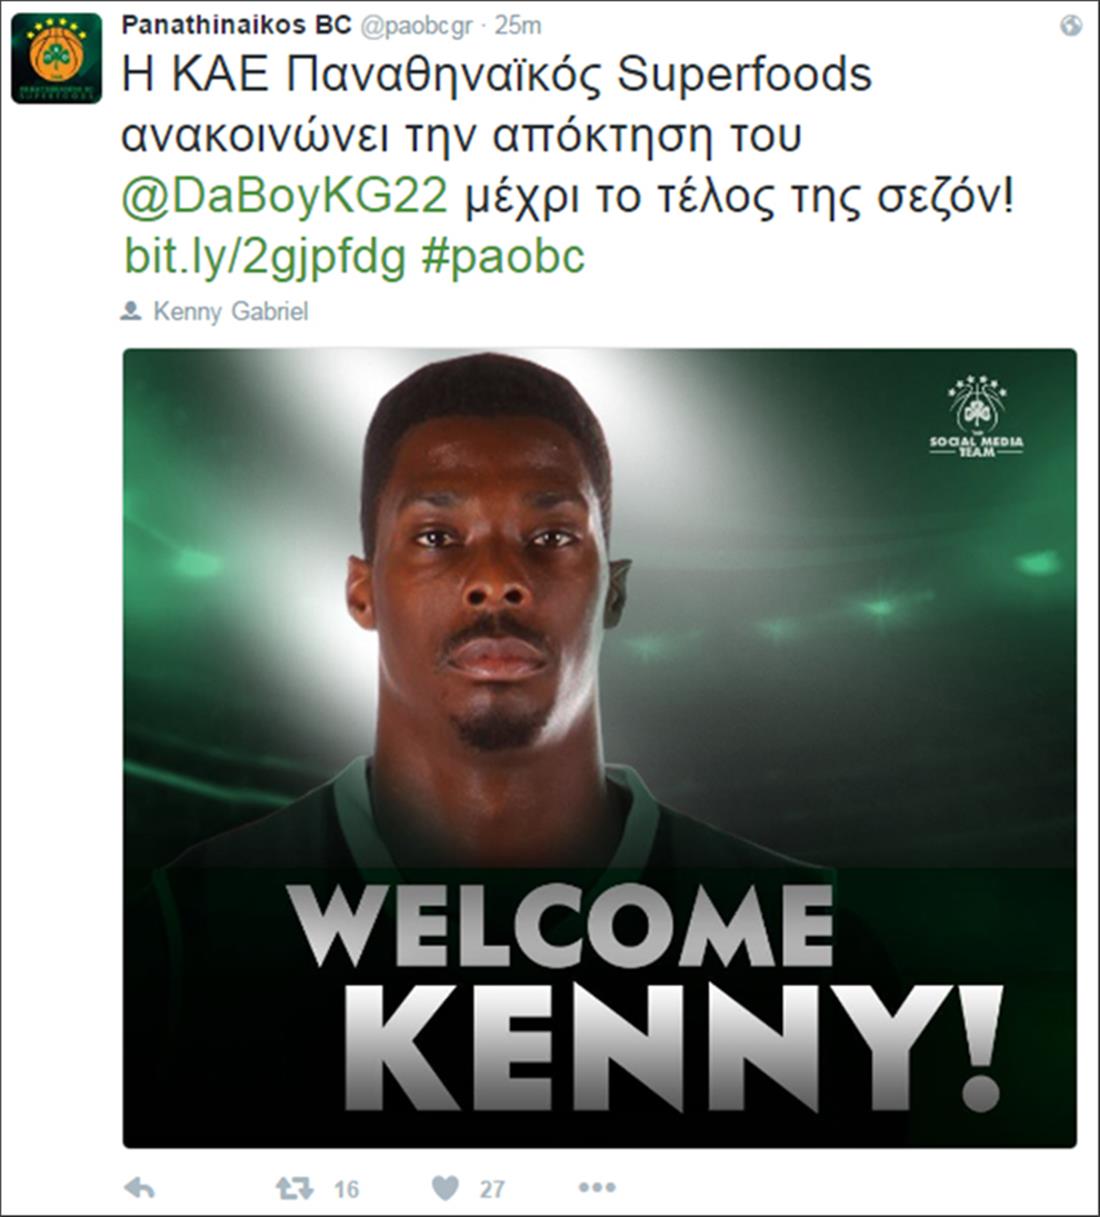 Παναθηναϊκός - μπασκετ - tweet - Kenny Gabriel